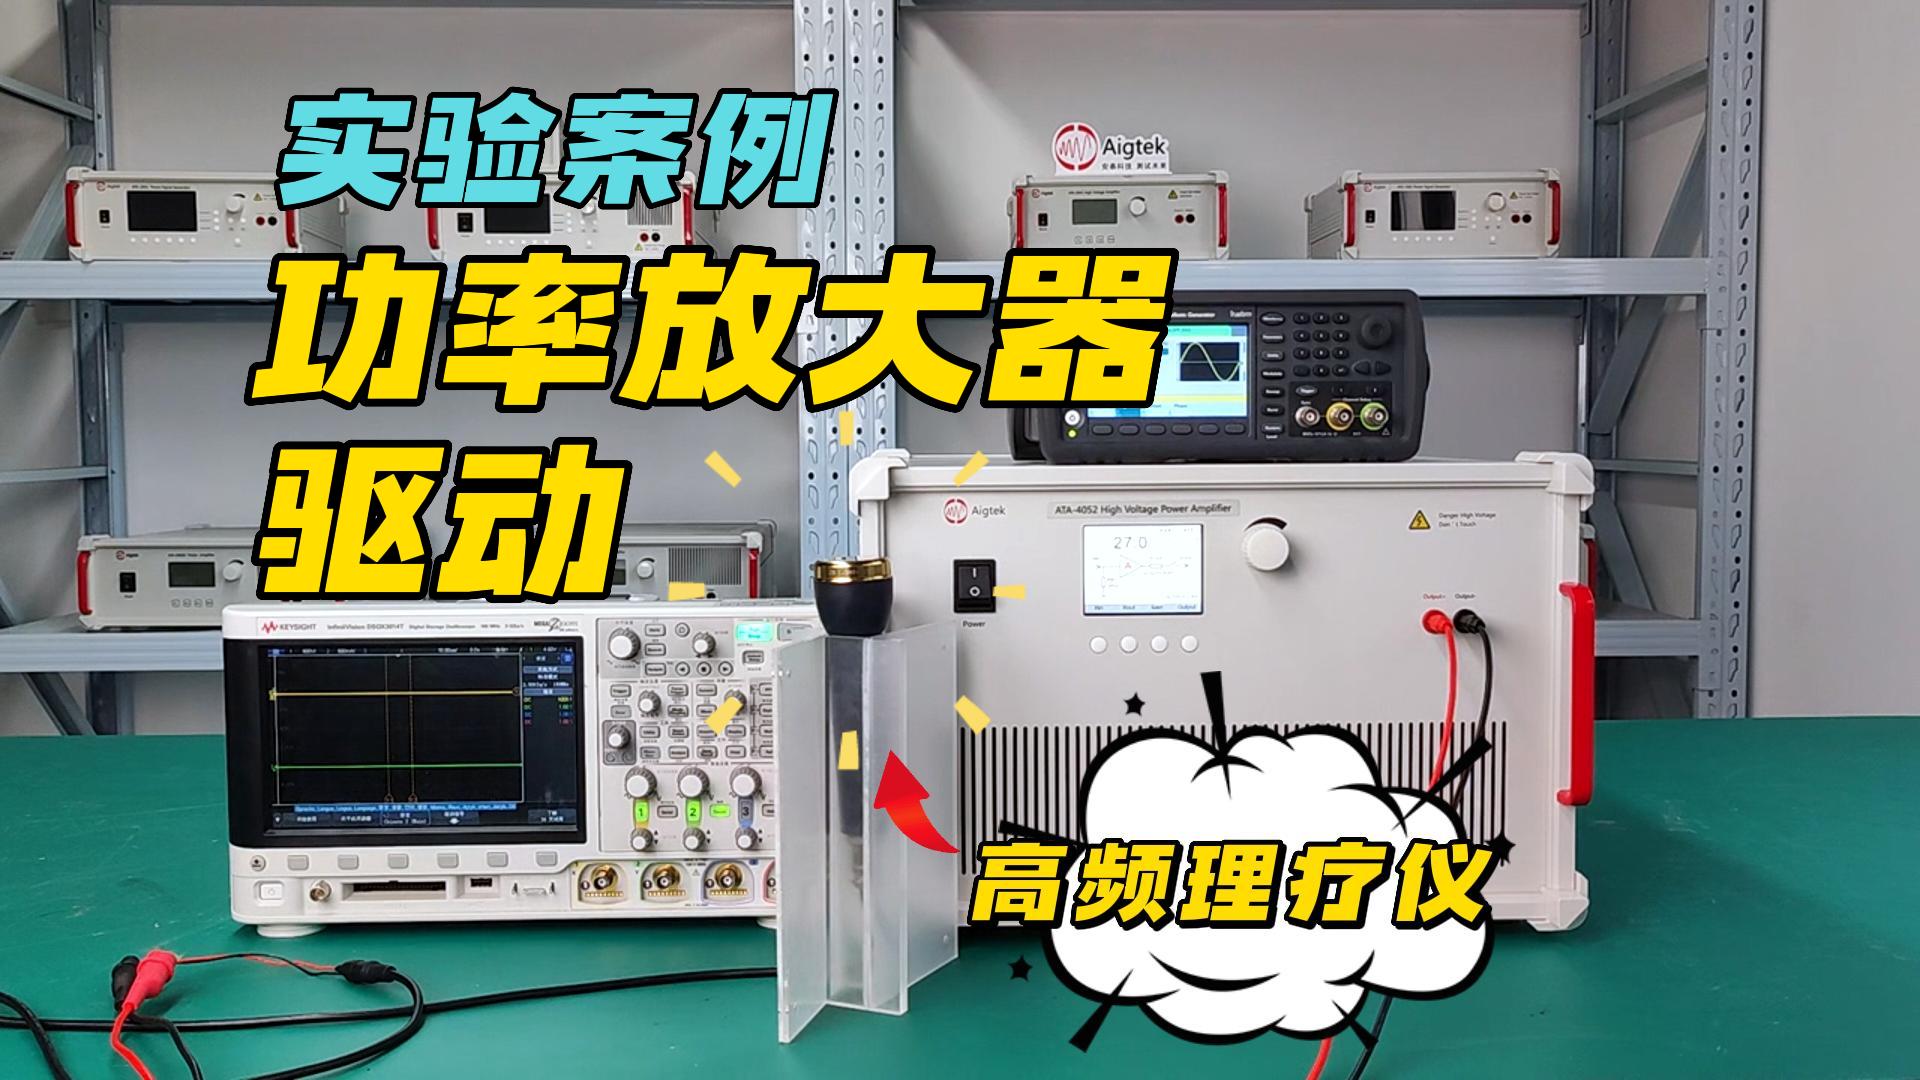 功率放大器经典实验案例——高频理疗仪驱动（ATA-4052）#电路知识 #功率放大器 